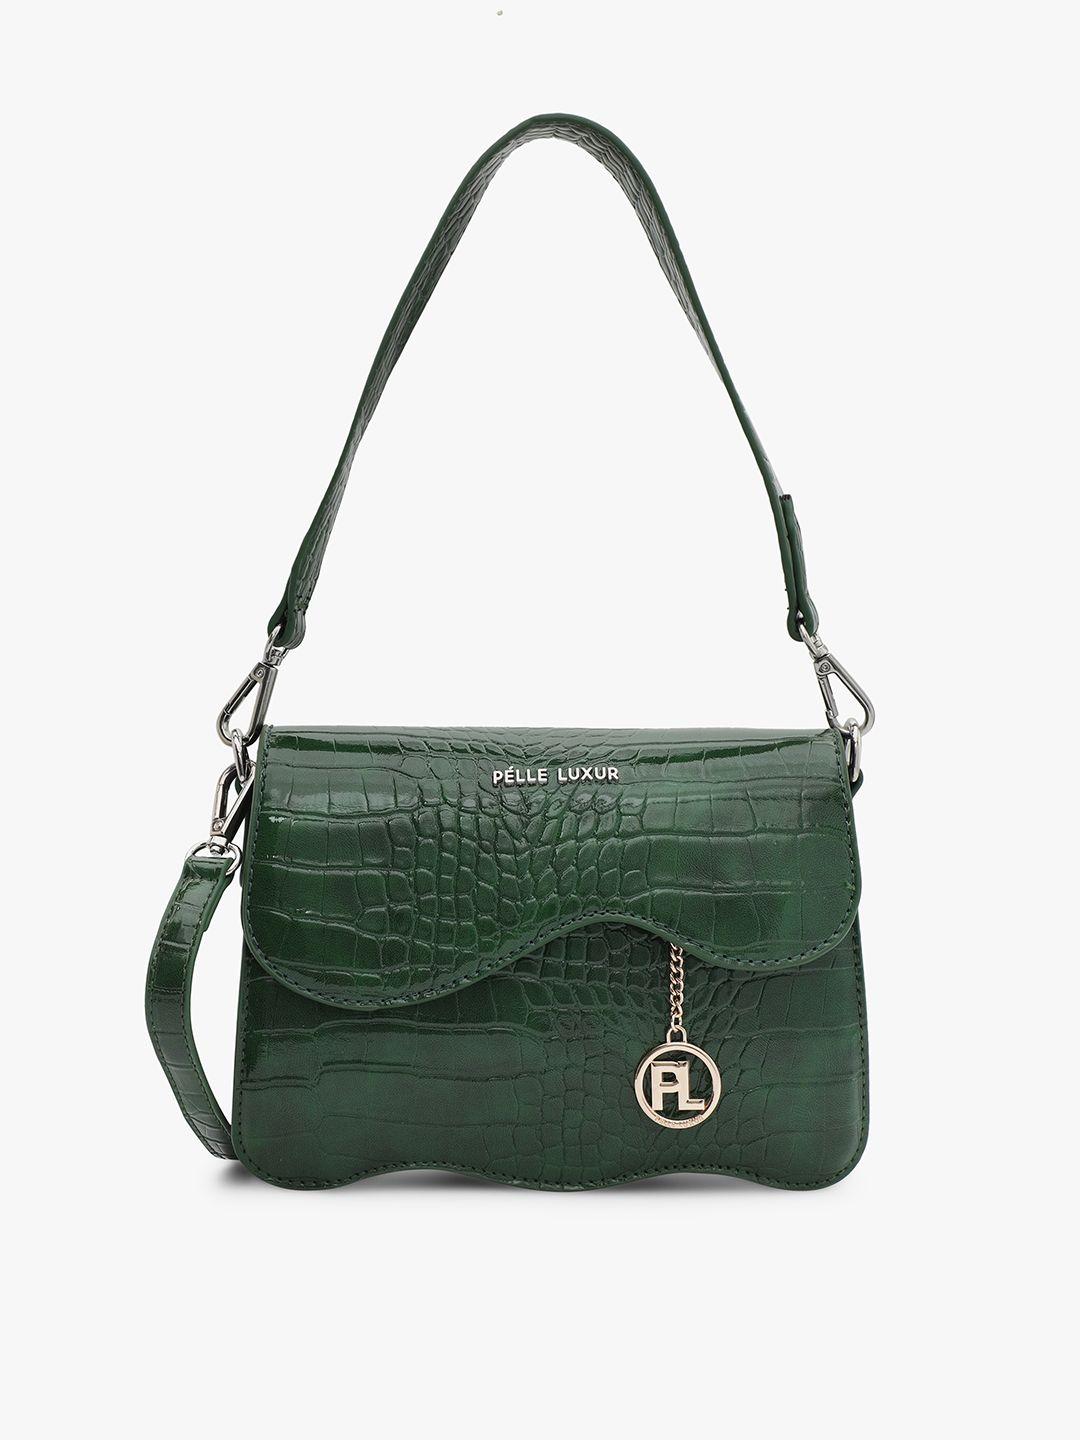 pelle luxur green animal textured pu structured satchel